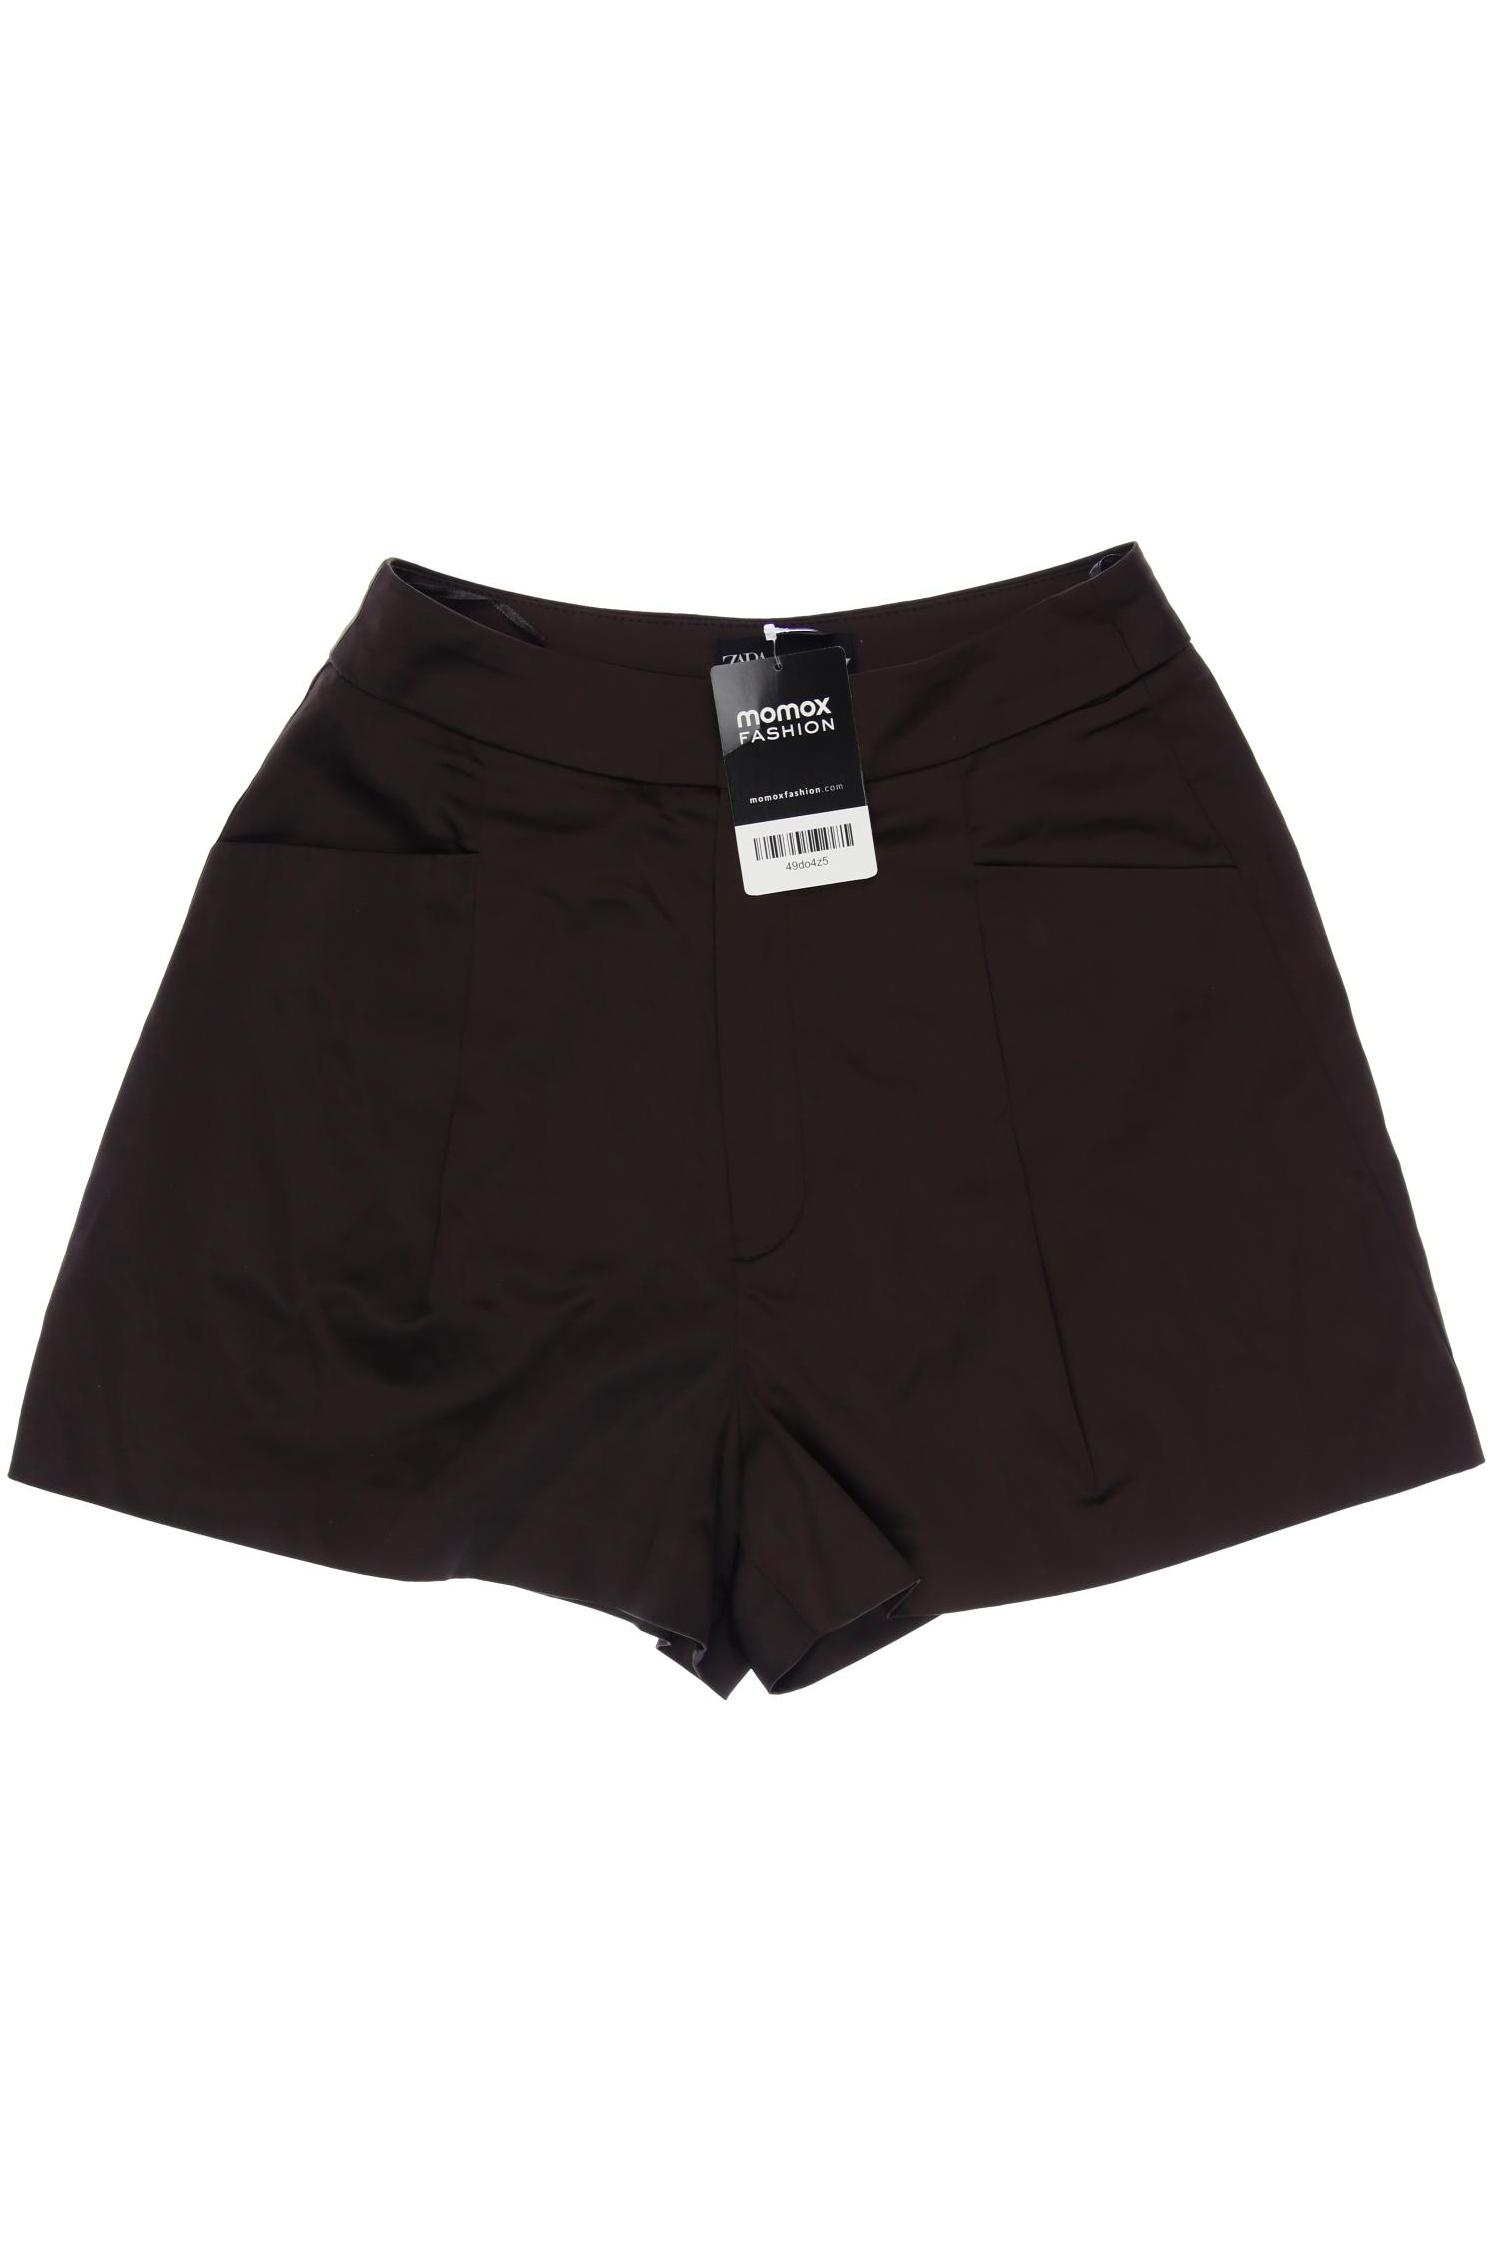 Zara Damen Shorts, braun, Gr. 34 von ZARA